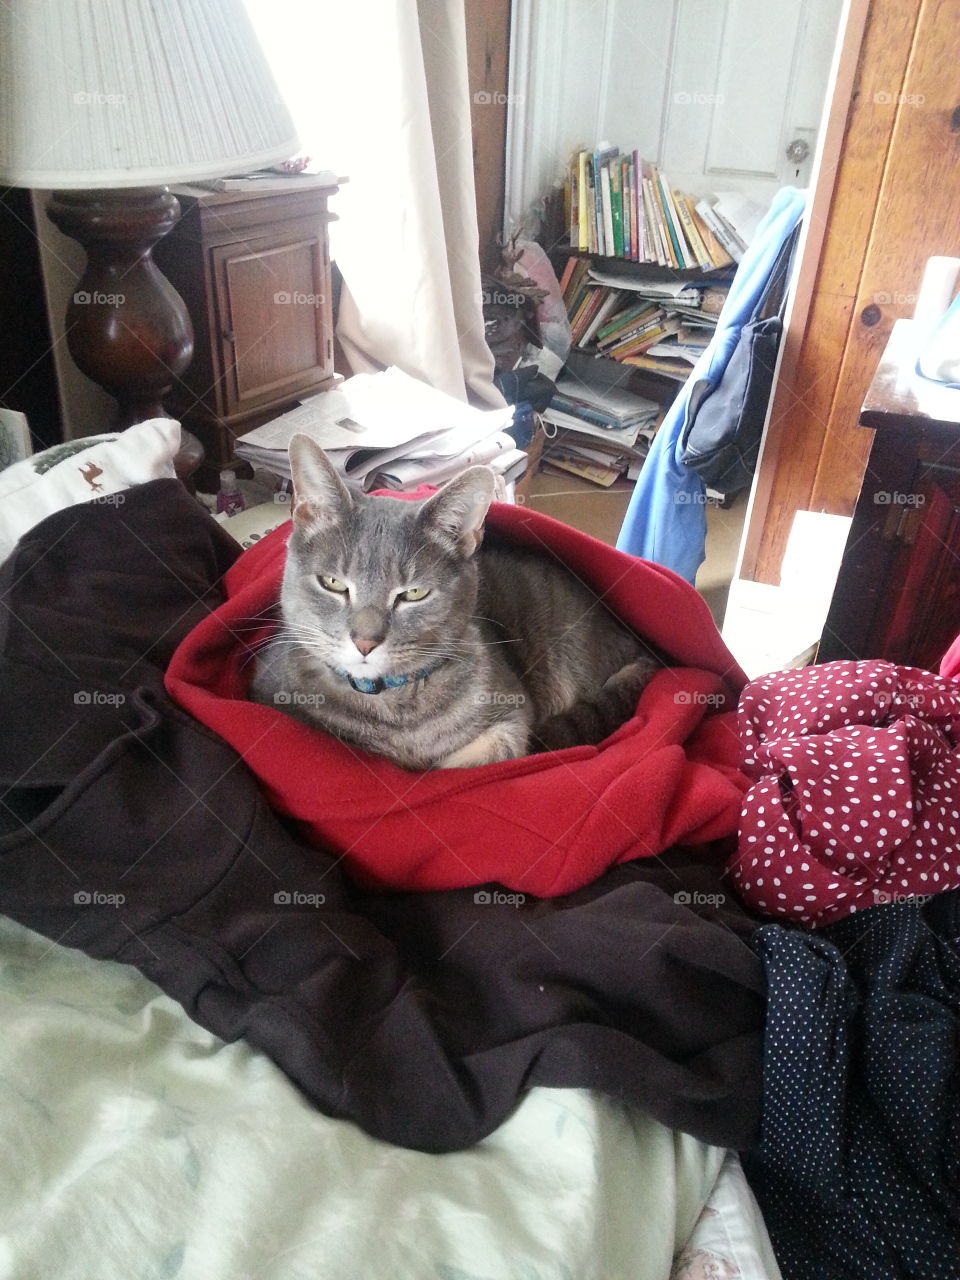 Cat snuggled up in a red coat